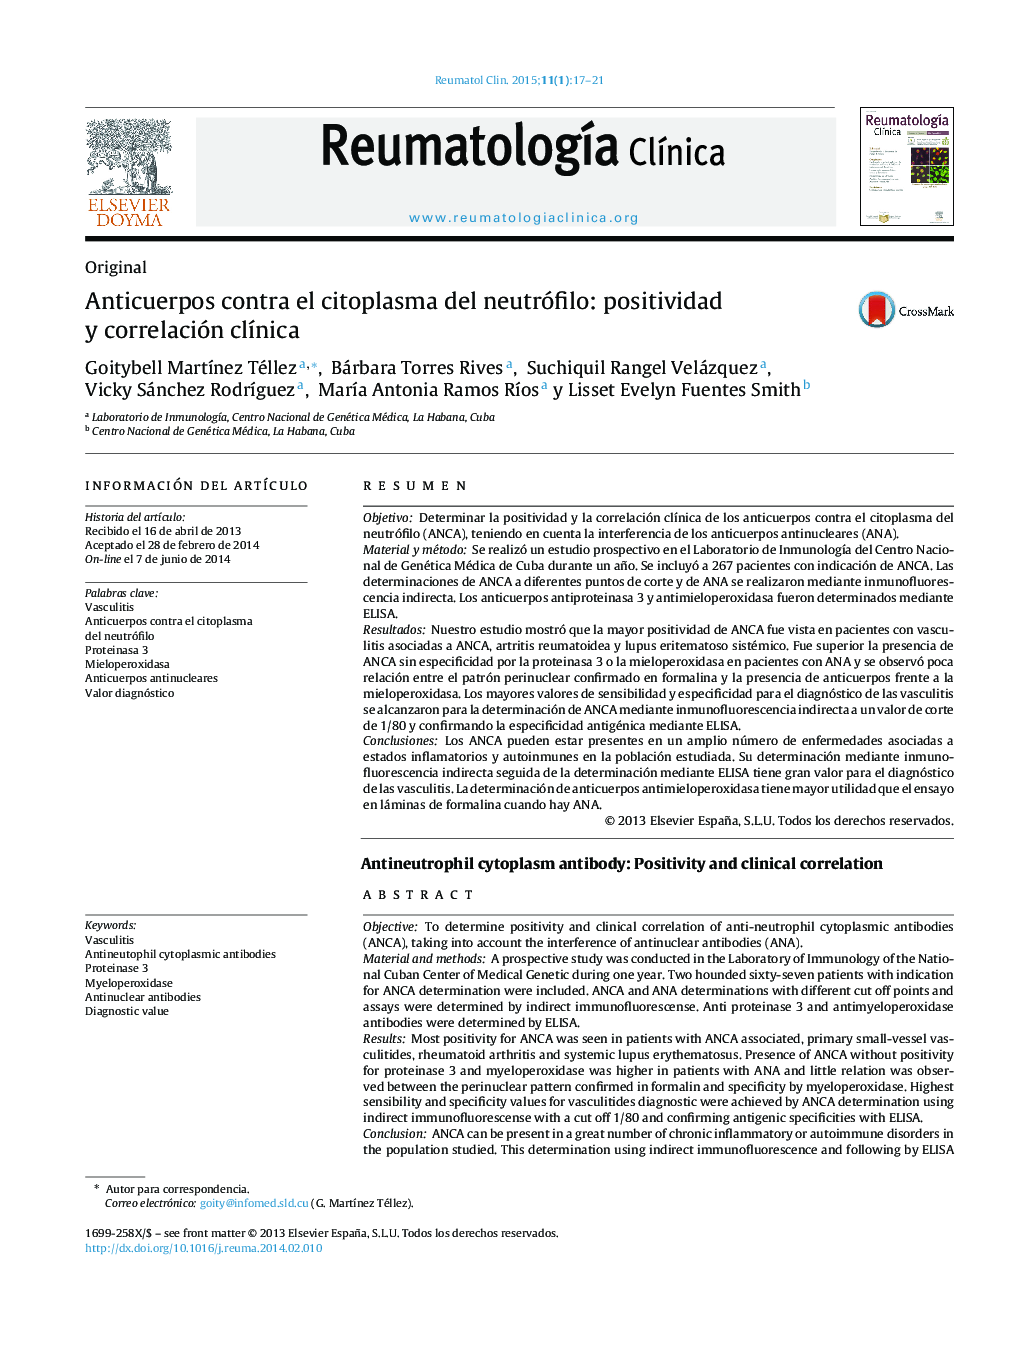 آنتیبادی علیه سیتوپلاسم نوتروفیل: مثبت و همبستگی بالینی 